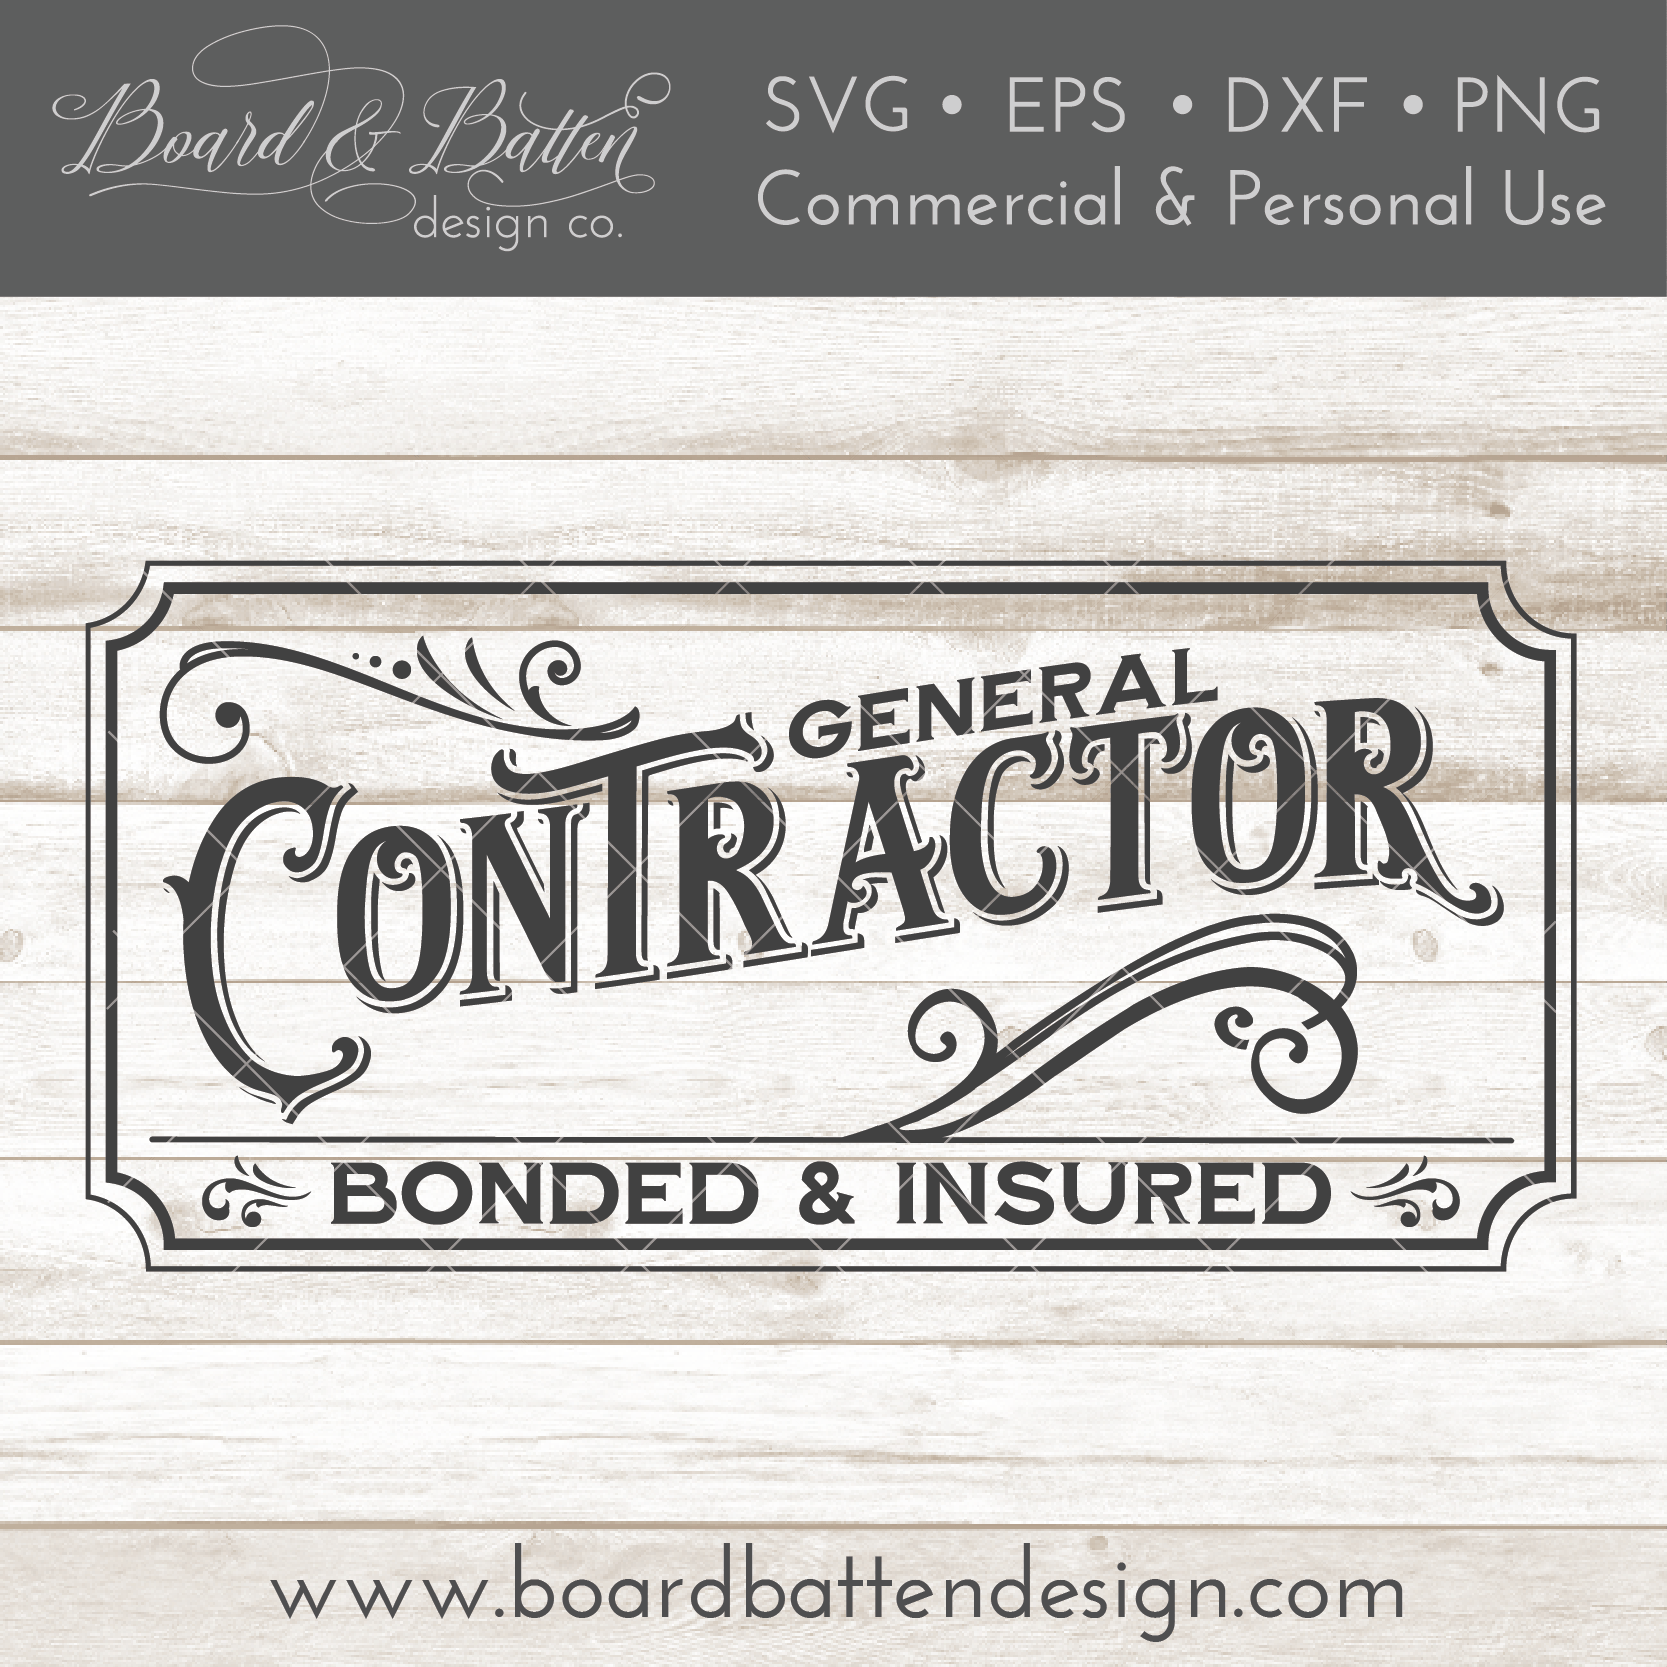 Download Vintage Style General Contractor Sign SVG File - Board & Batten Design Co.